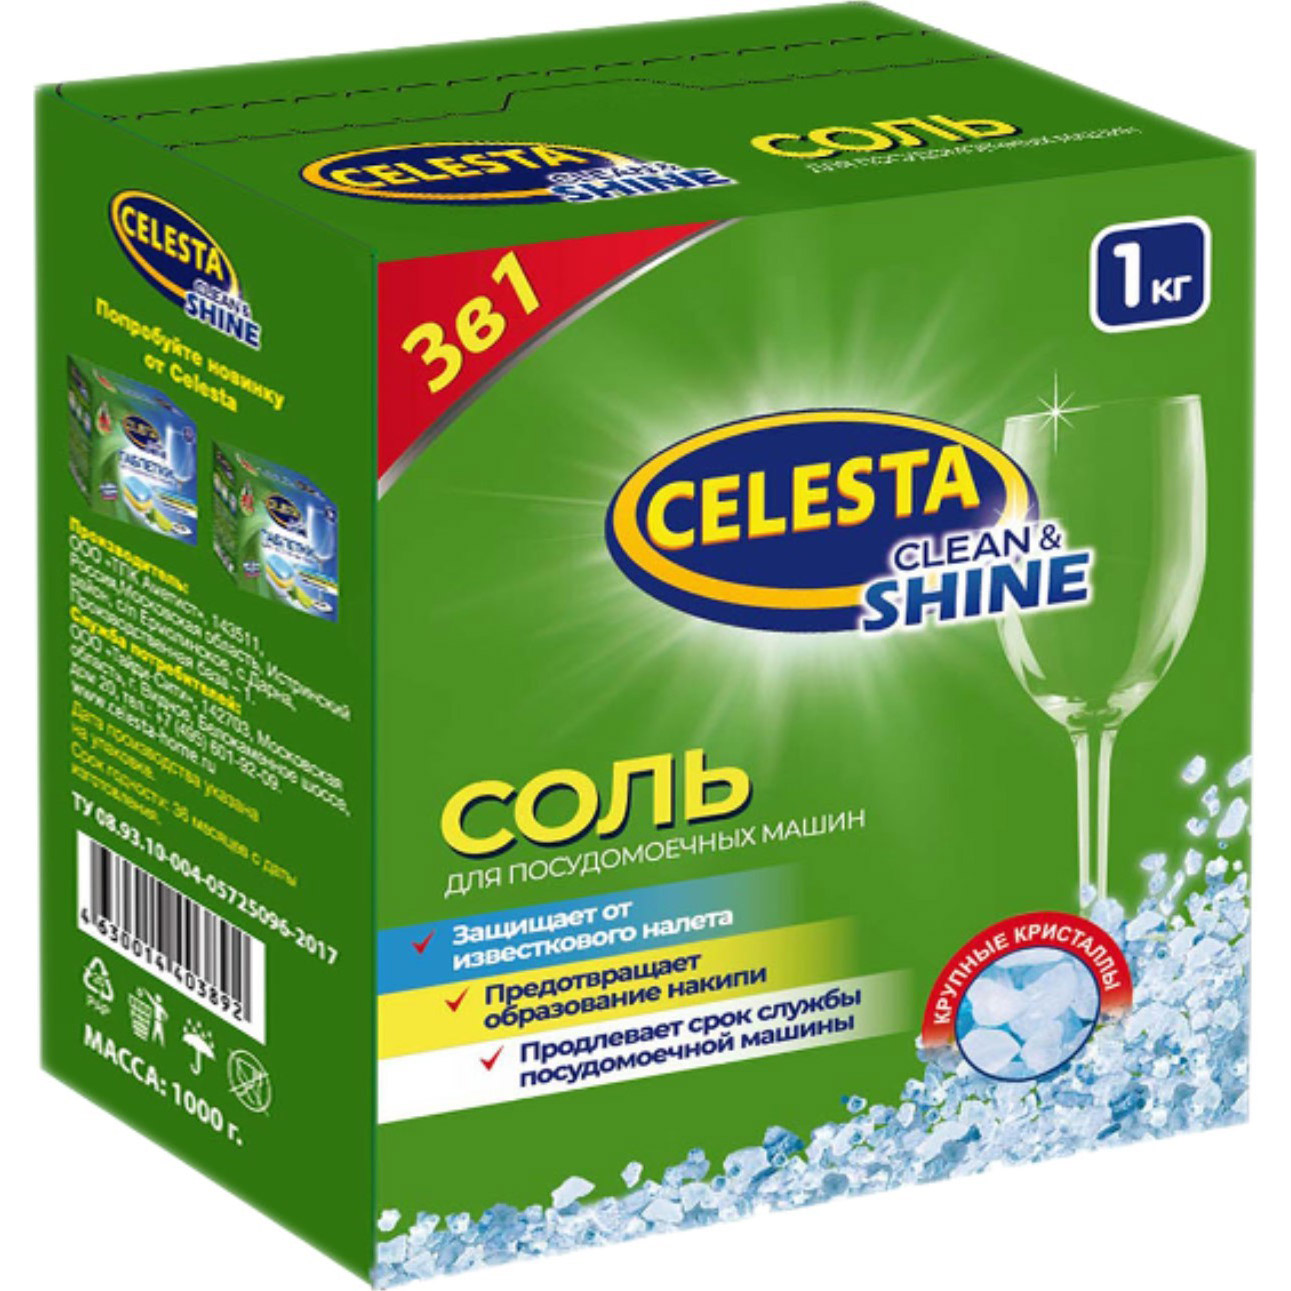 Соль для посудомоечной машины Celesta Clean & shine 1 кг